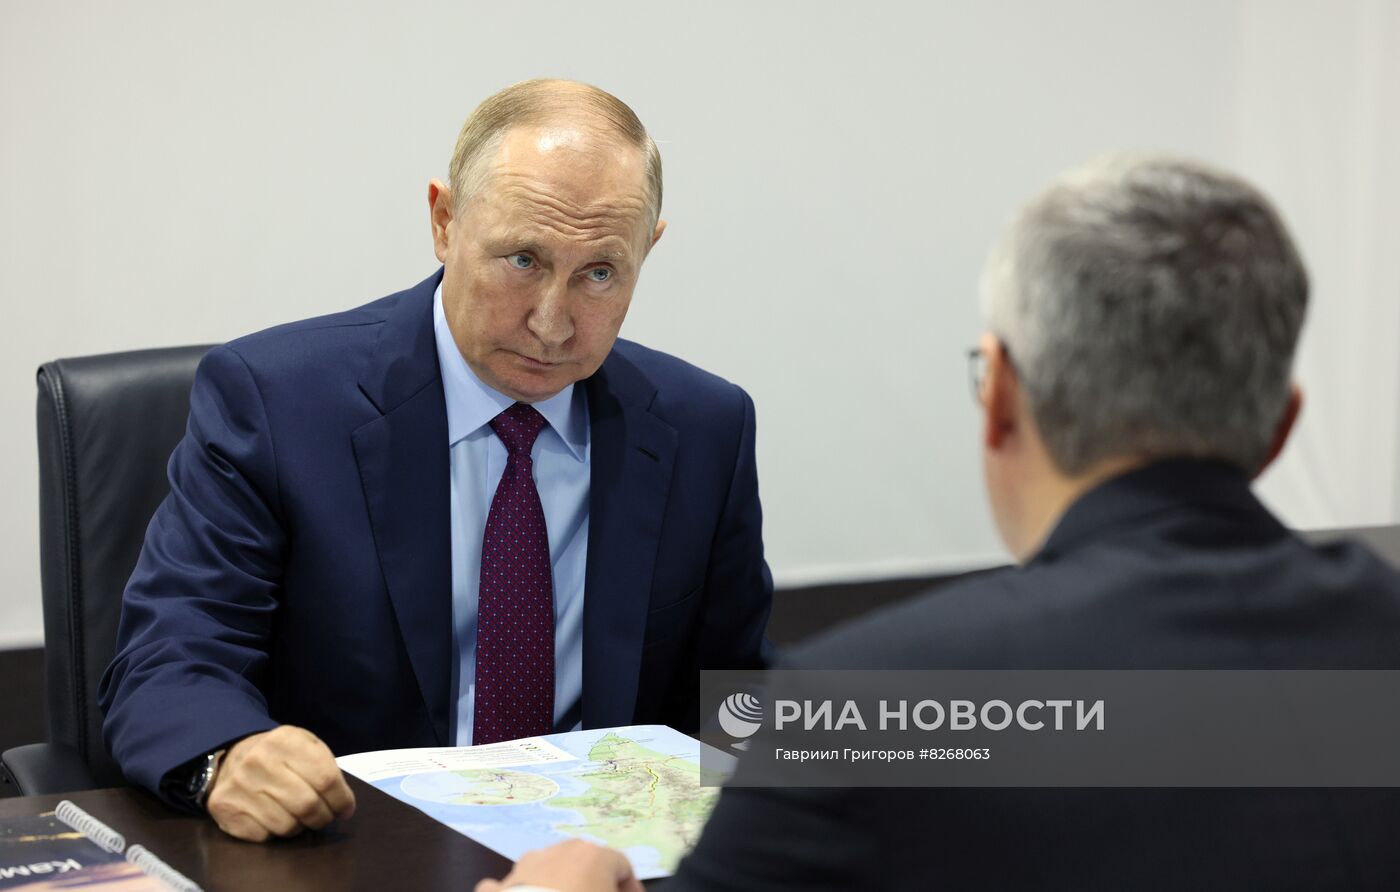 Рабочая поездка президента РФ В. Путина в Петропавловск-Камчатский